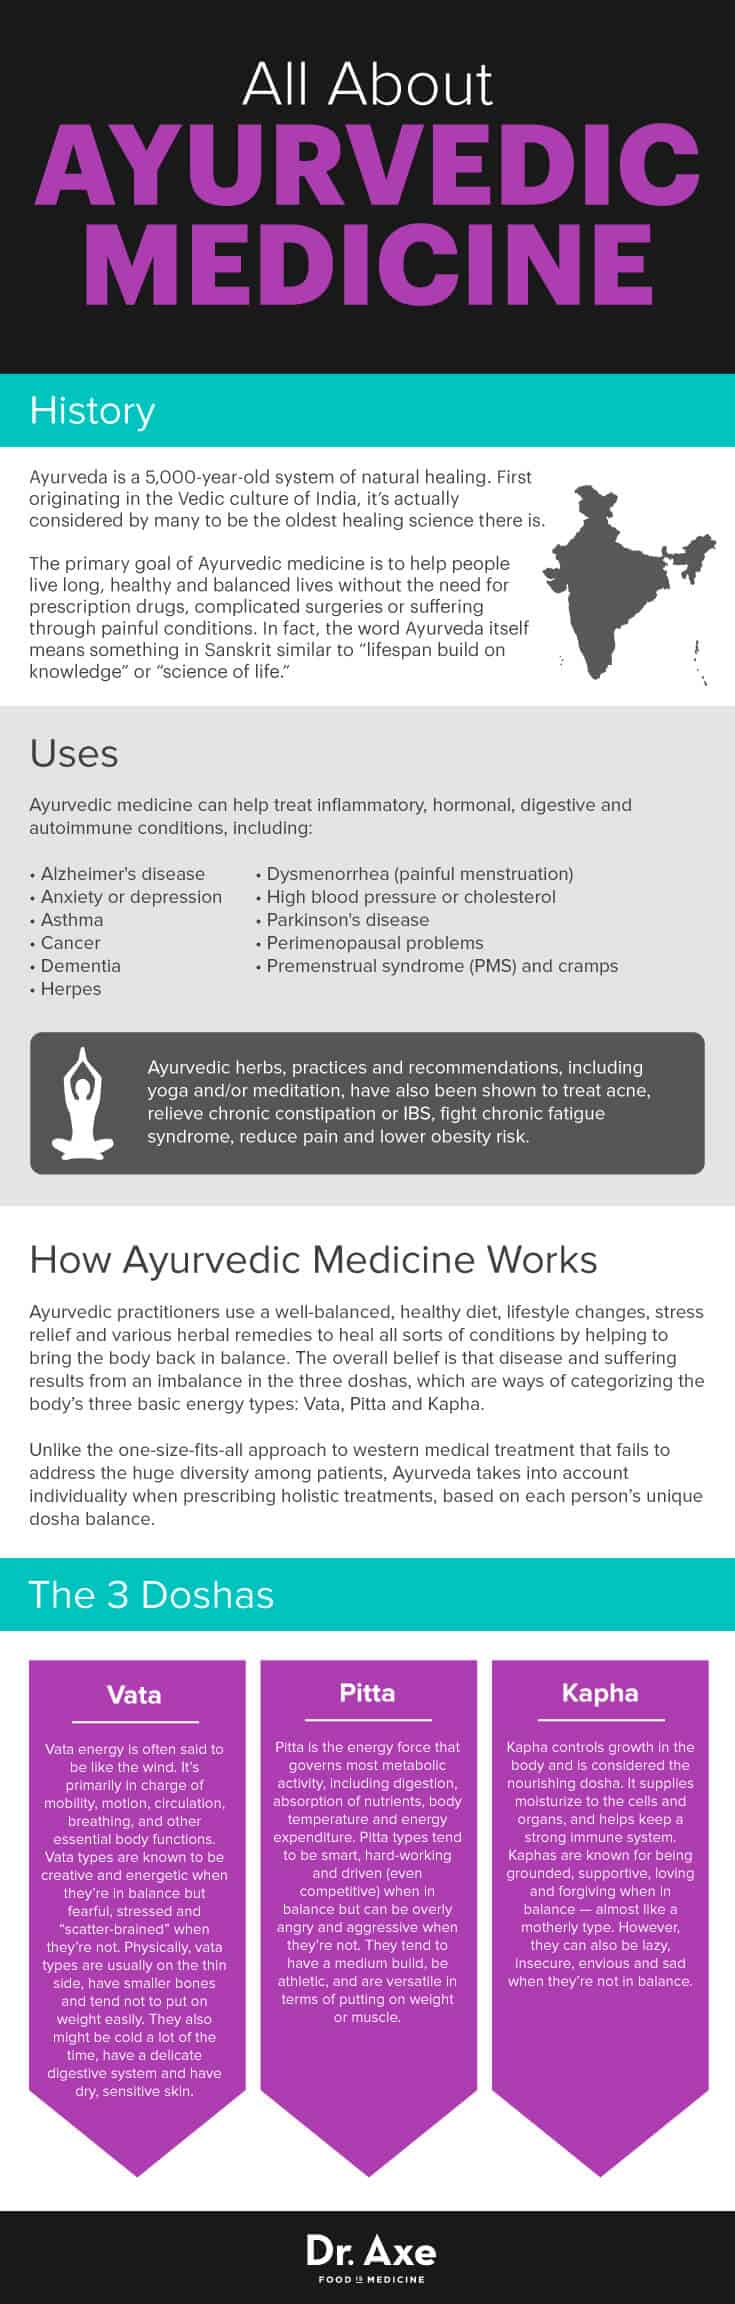 Ayurvedic medicine guide - Dr. Axe